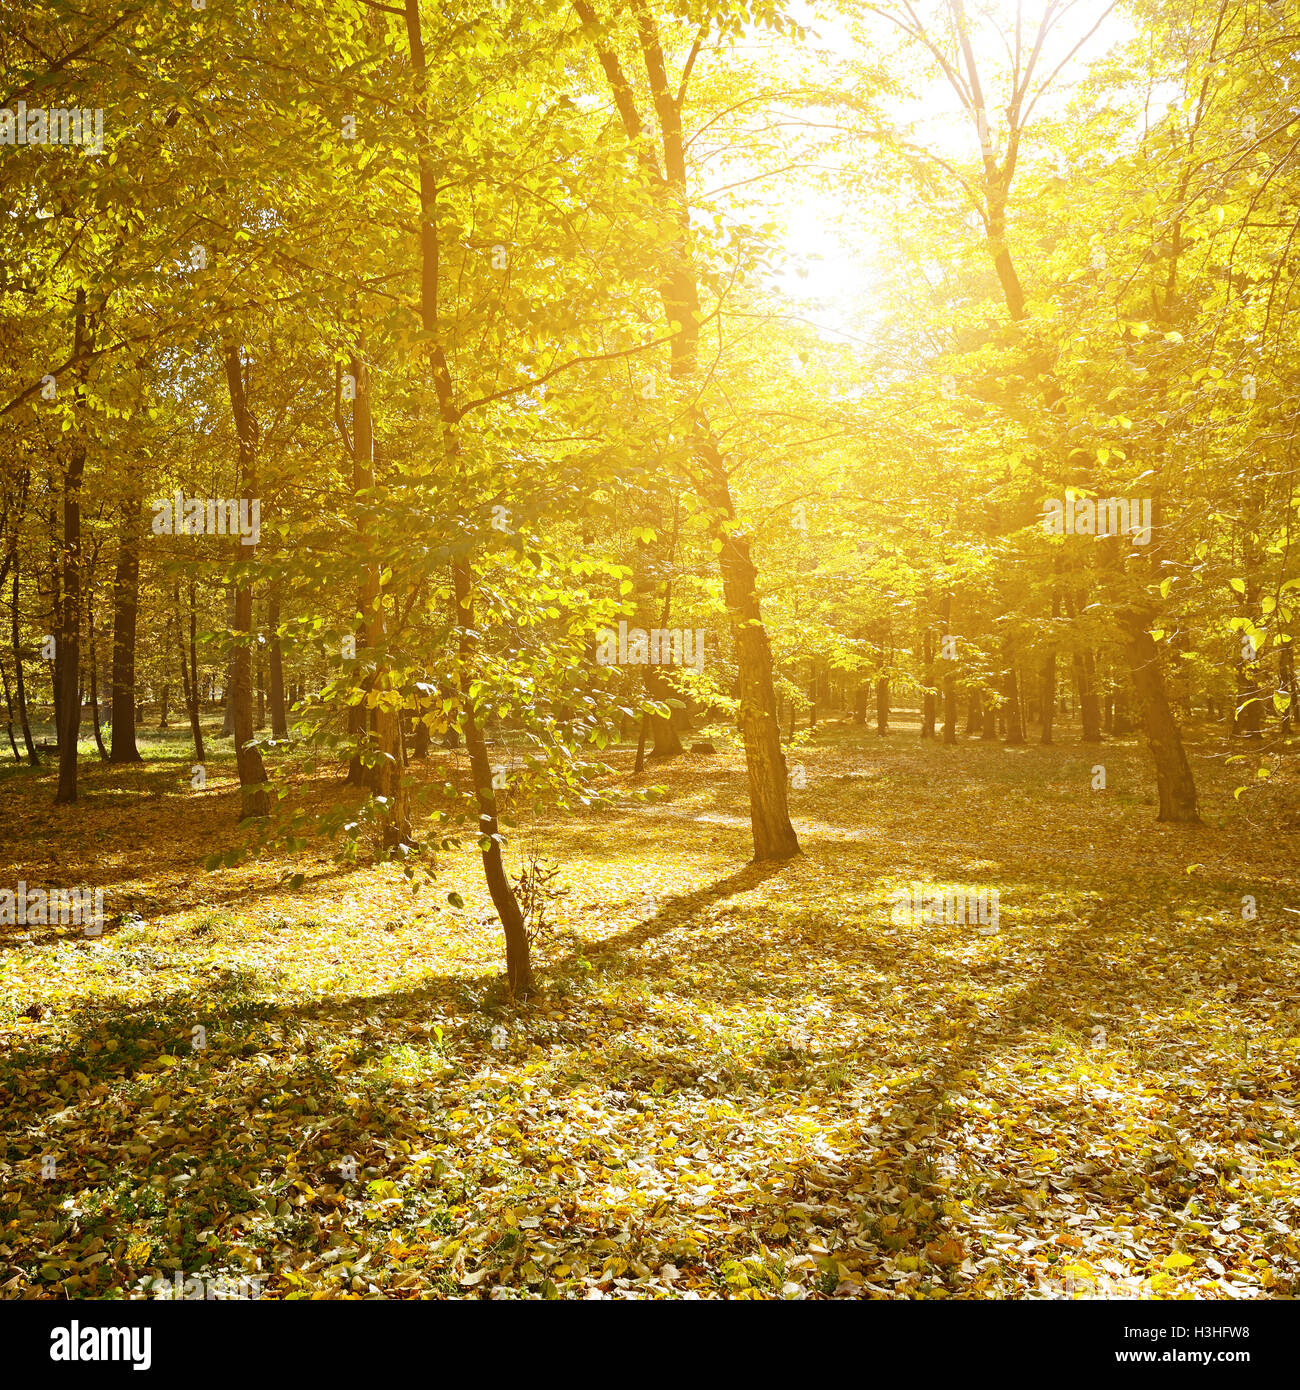 Rays of sun in autumn park Stock Photo